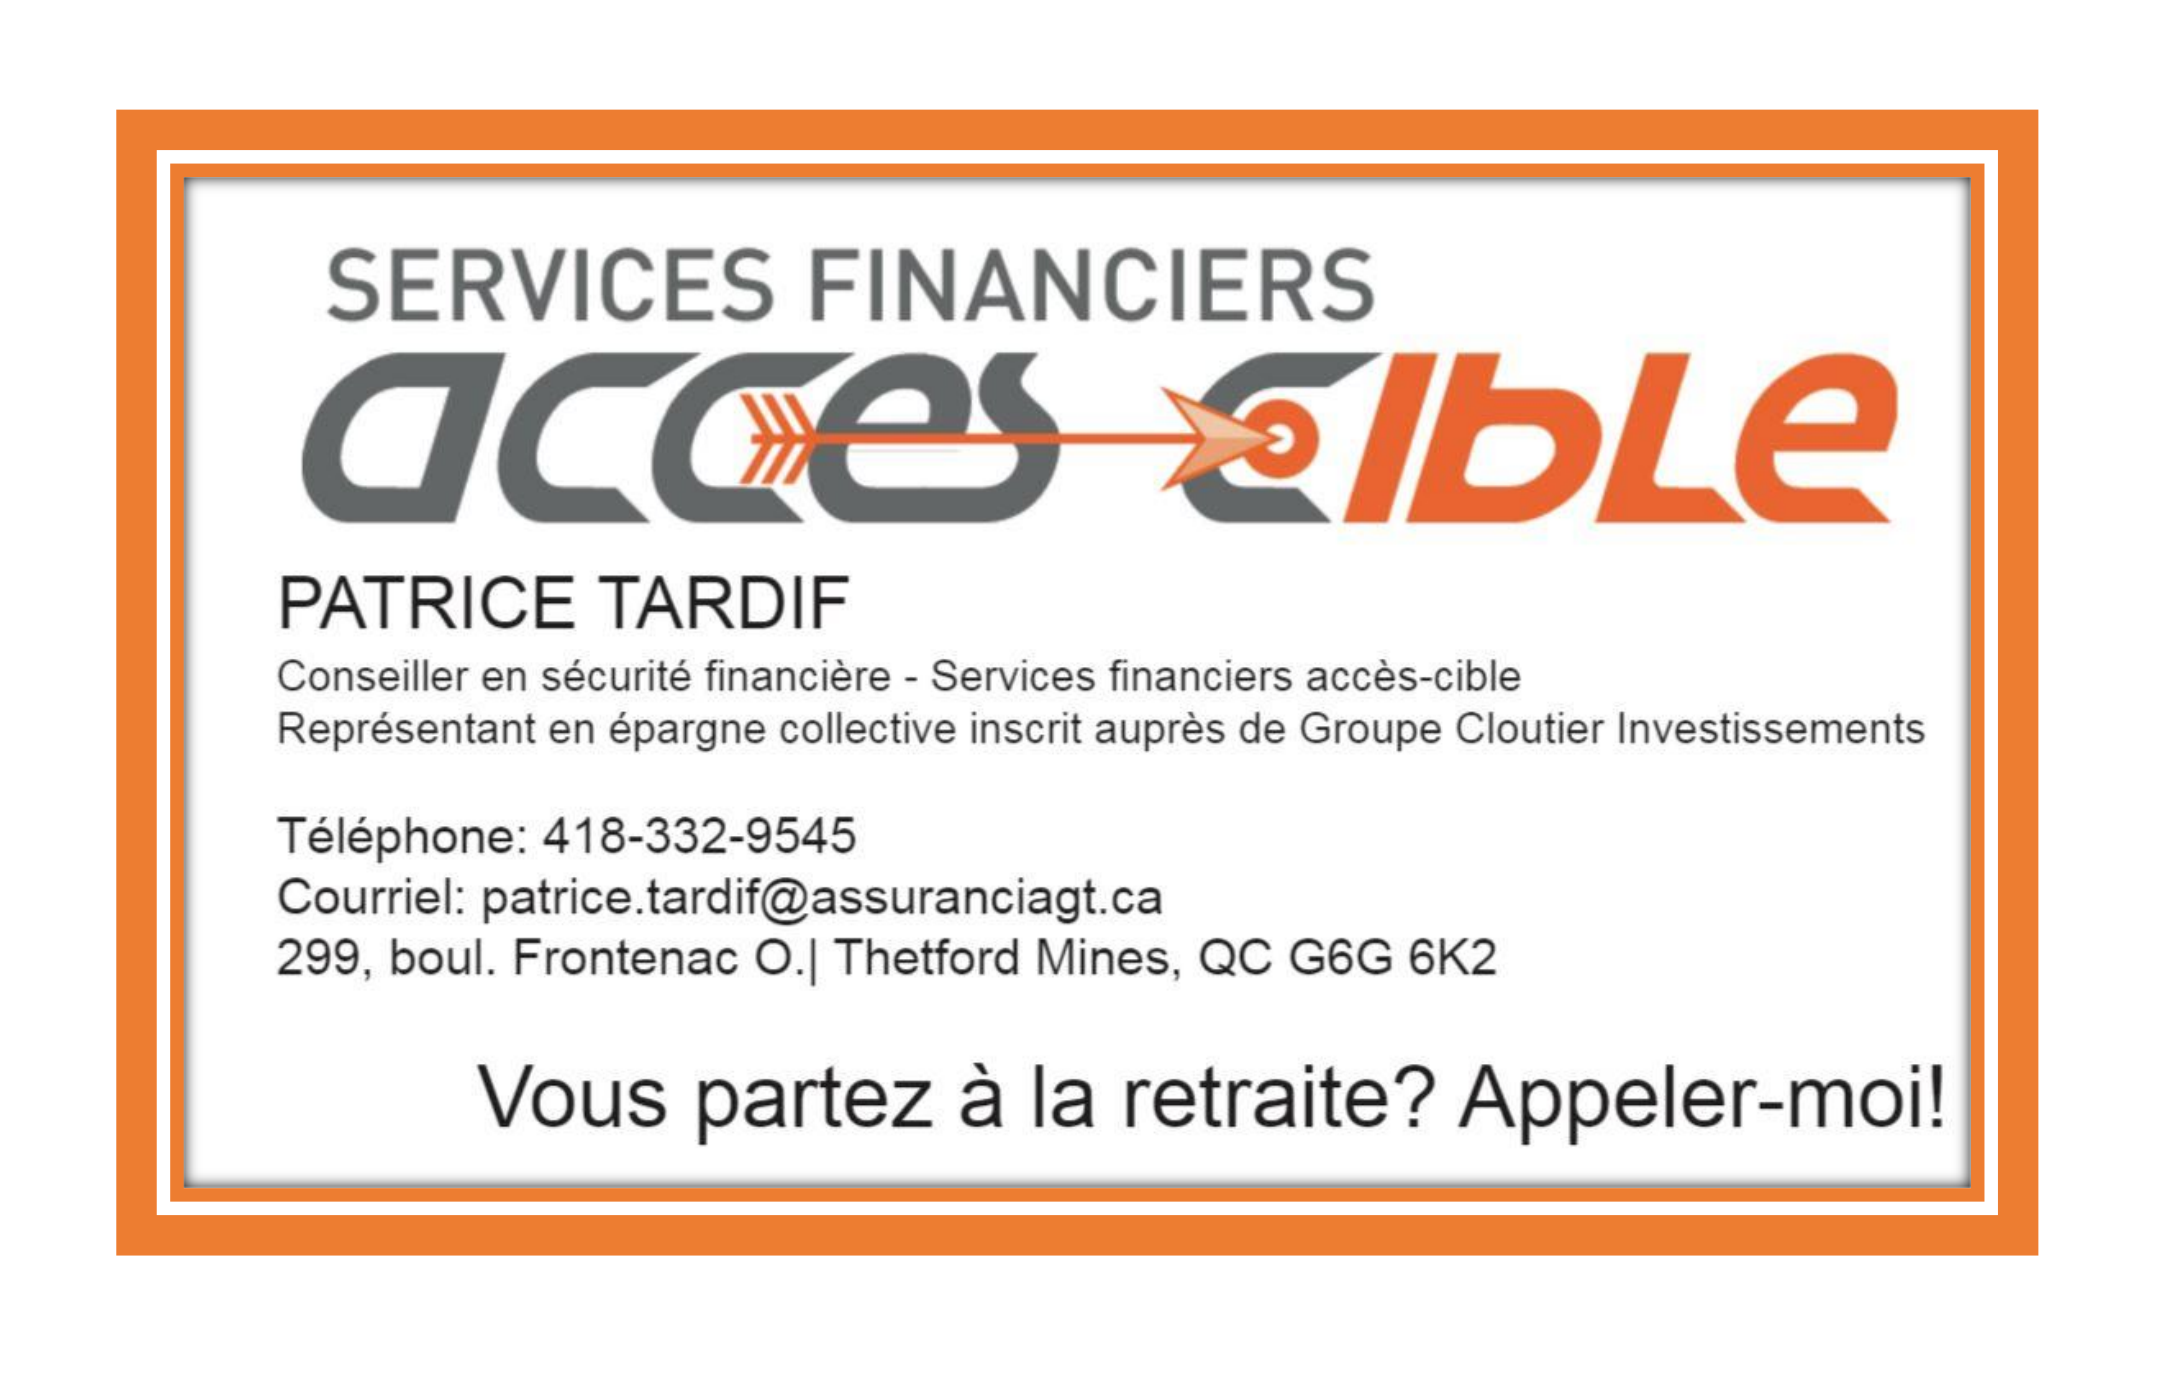 patrice-tardif-services-financiers